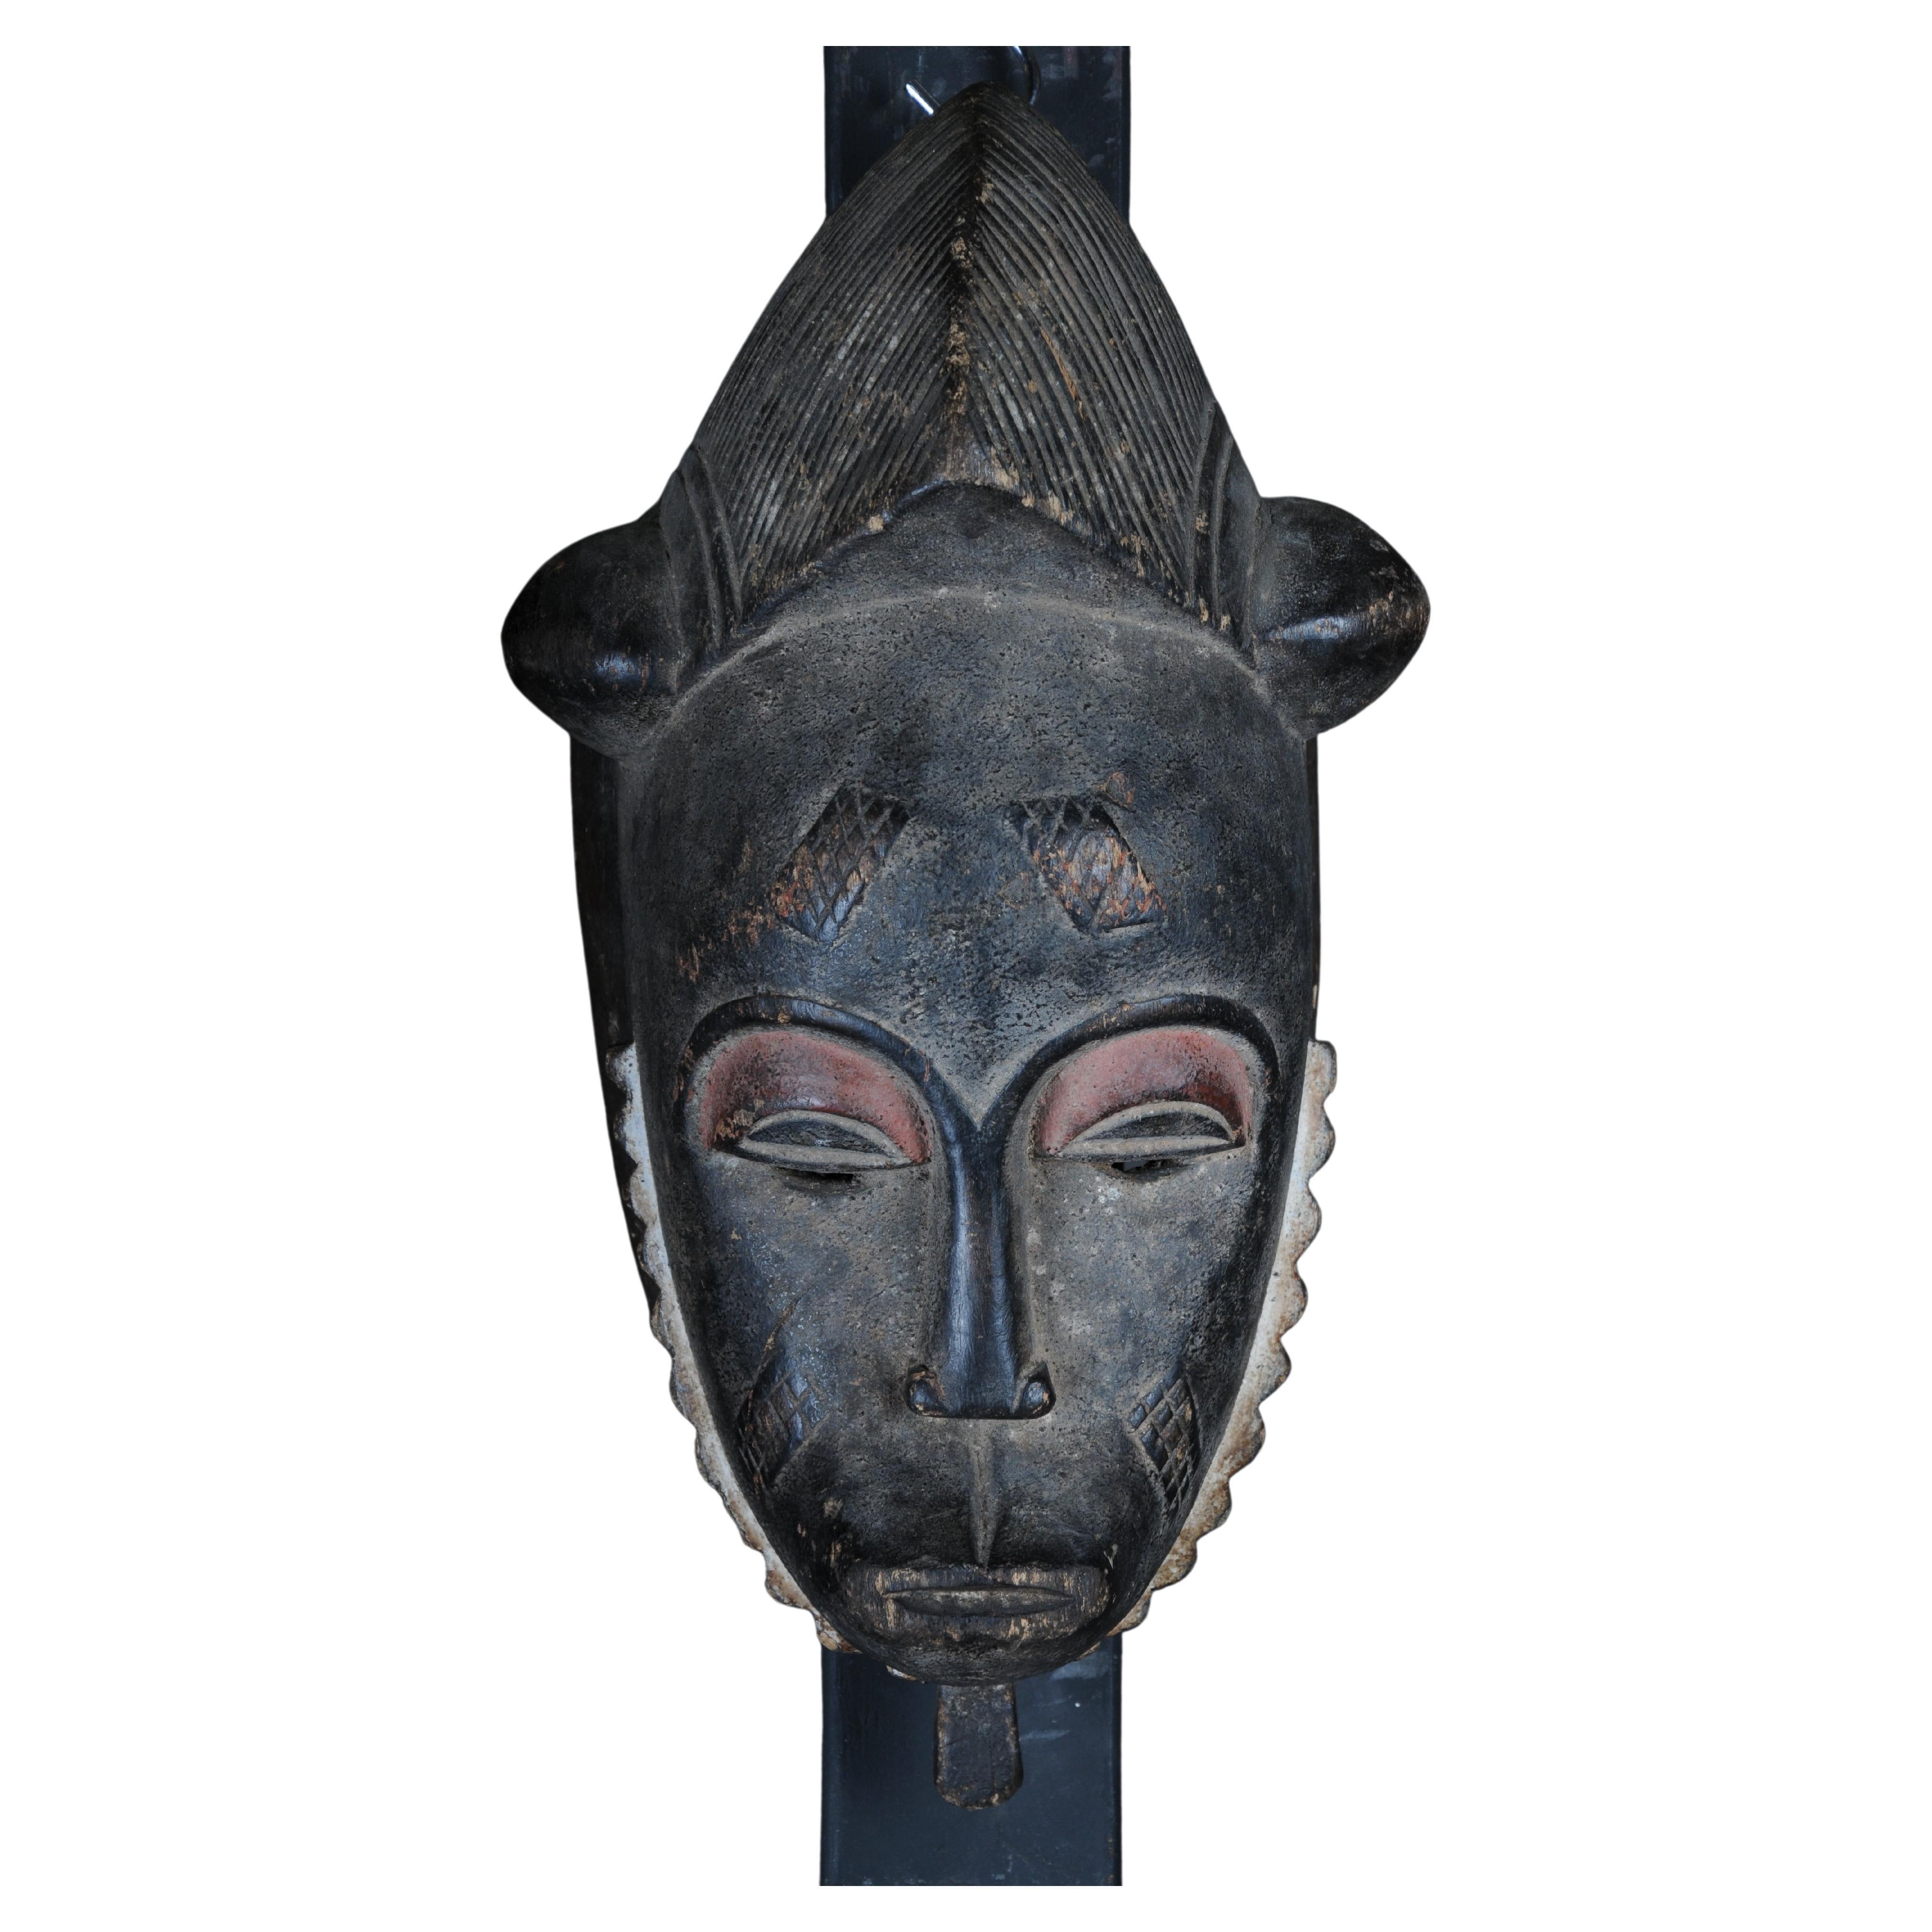 Máscara facial antigua de madera tallada del siglo XX, arte popular africano. Colgable.Decorat